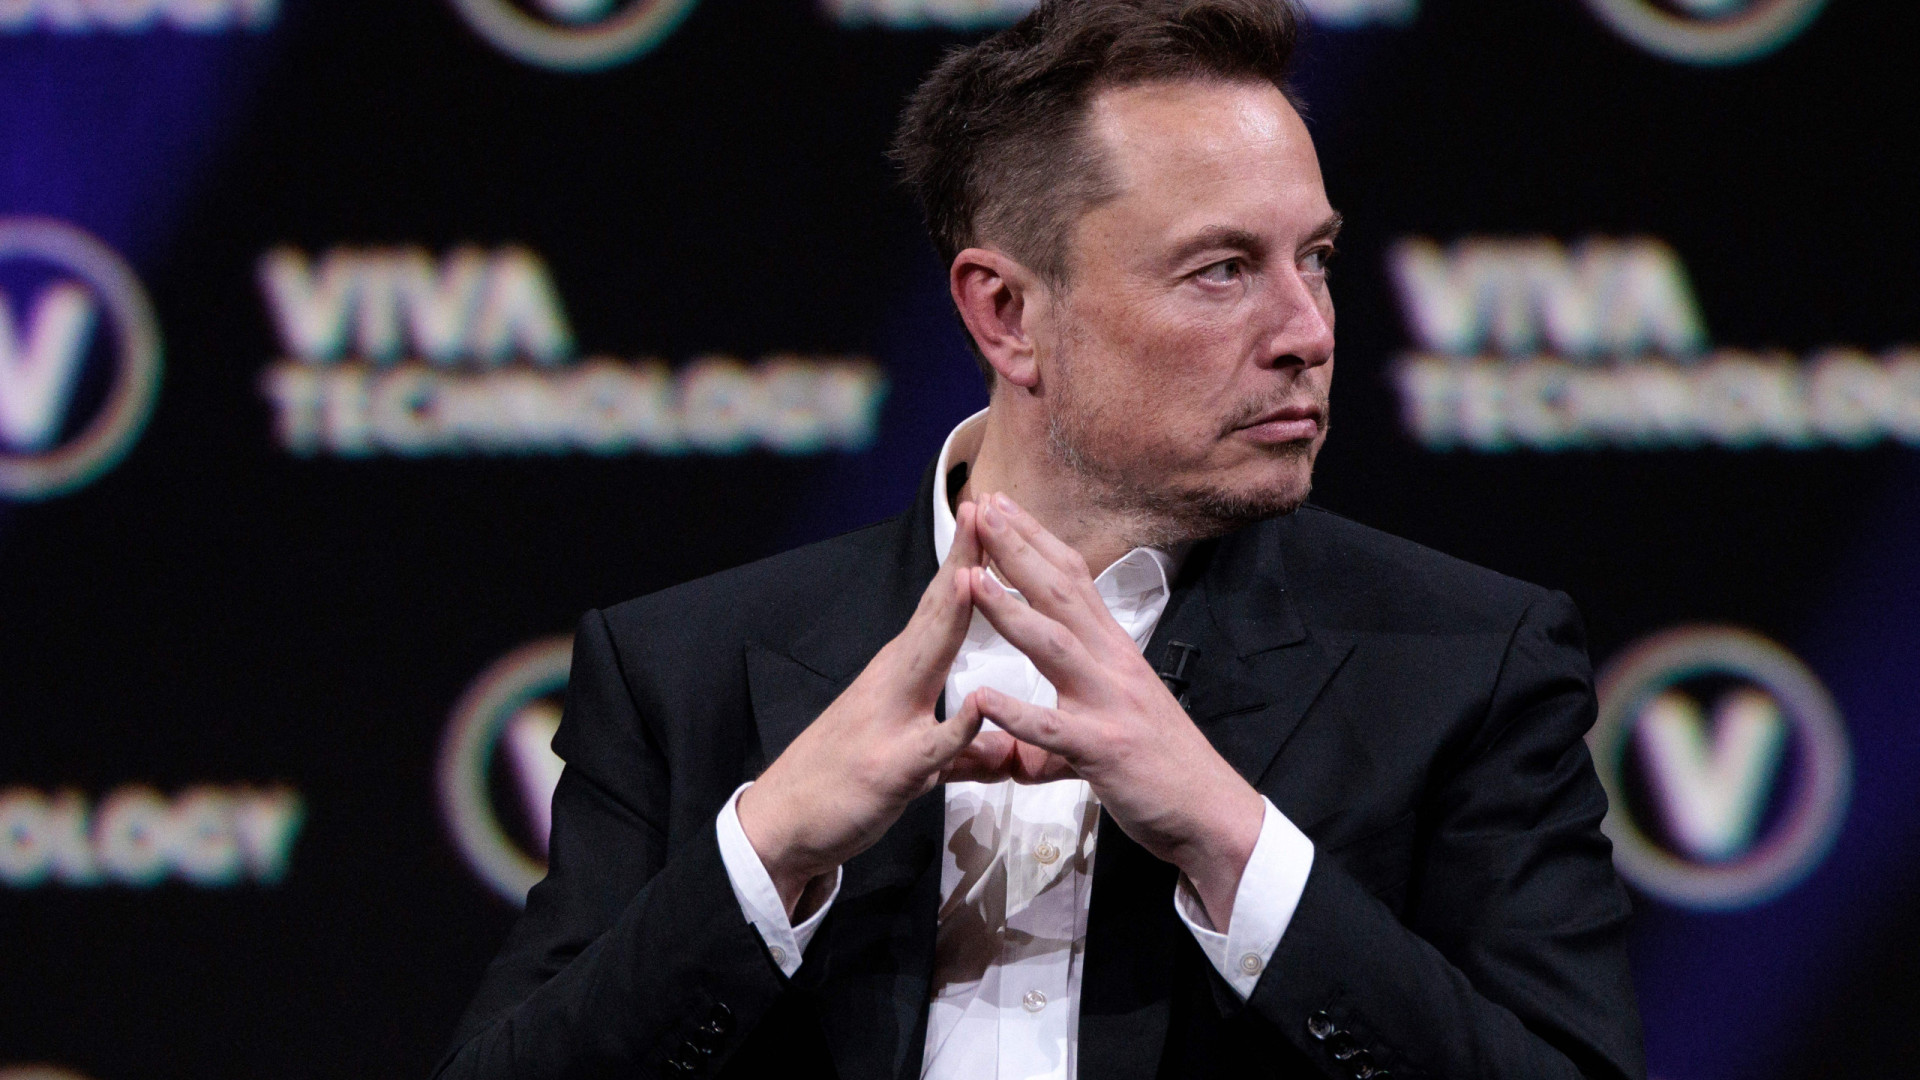 SpaceX teria emprestado dinheiro a Elon Musk para comprar Twitter